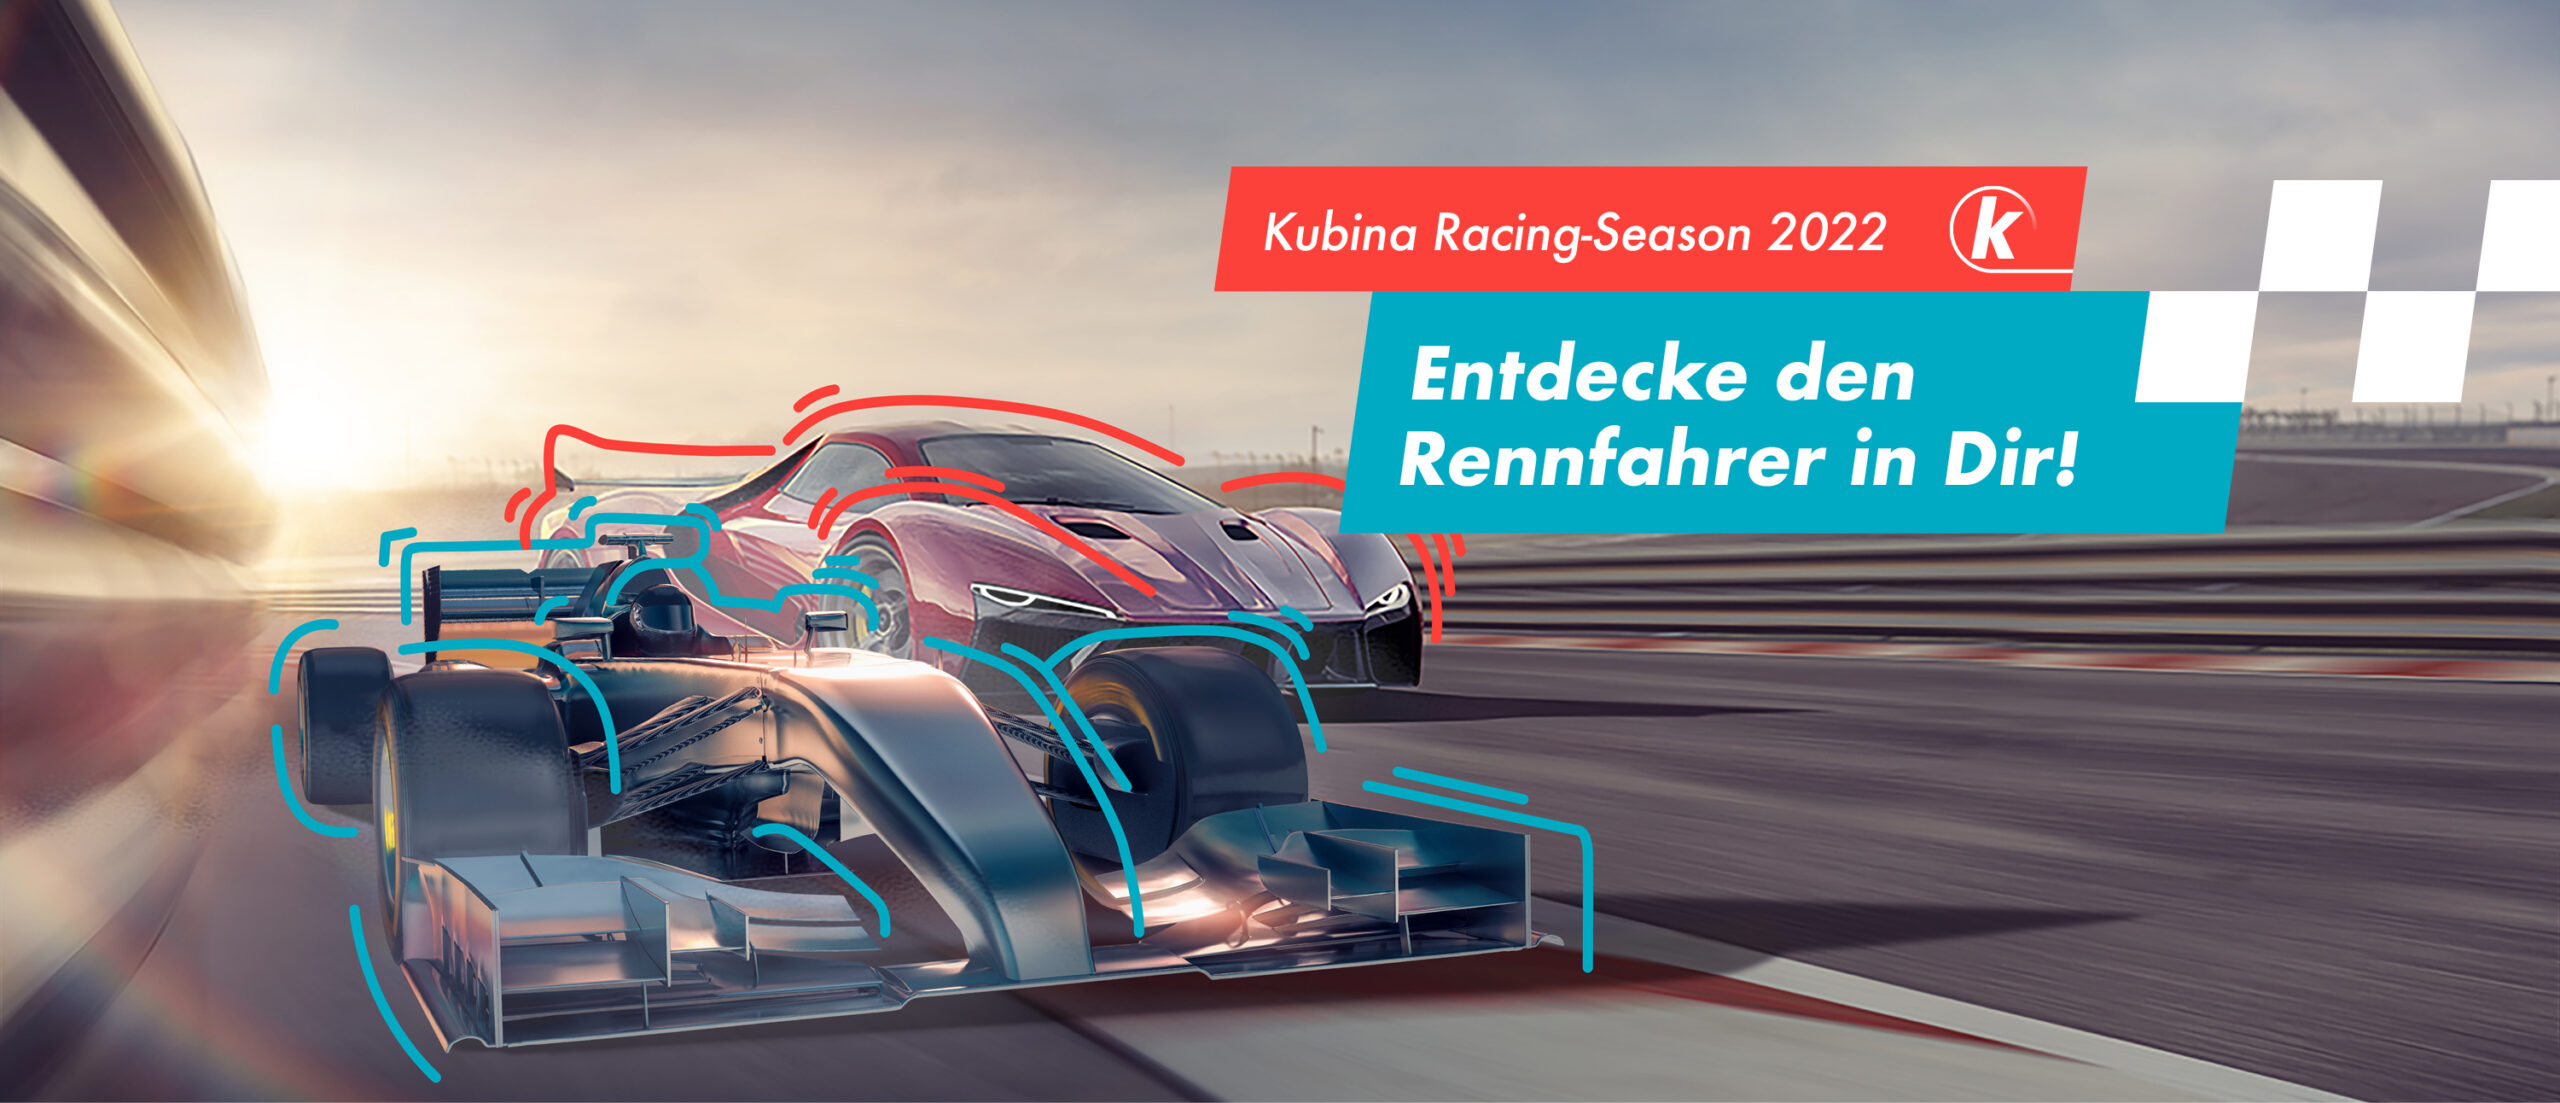 Kubina Racing Season 2022